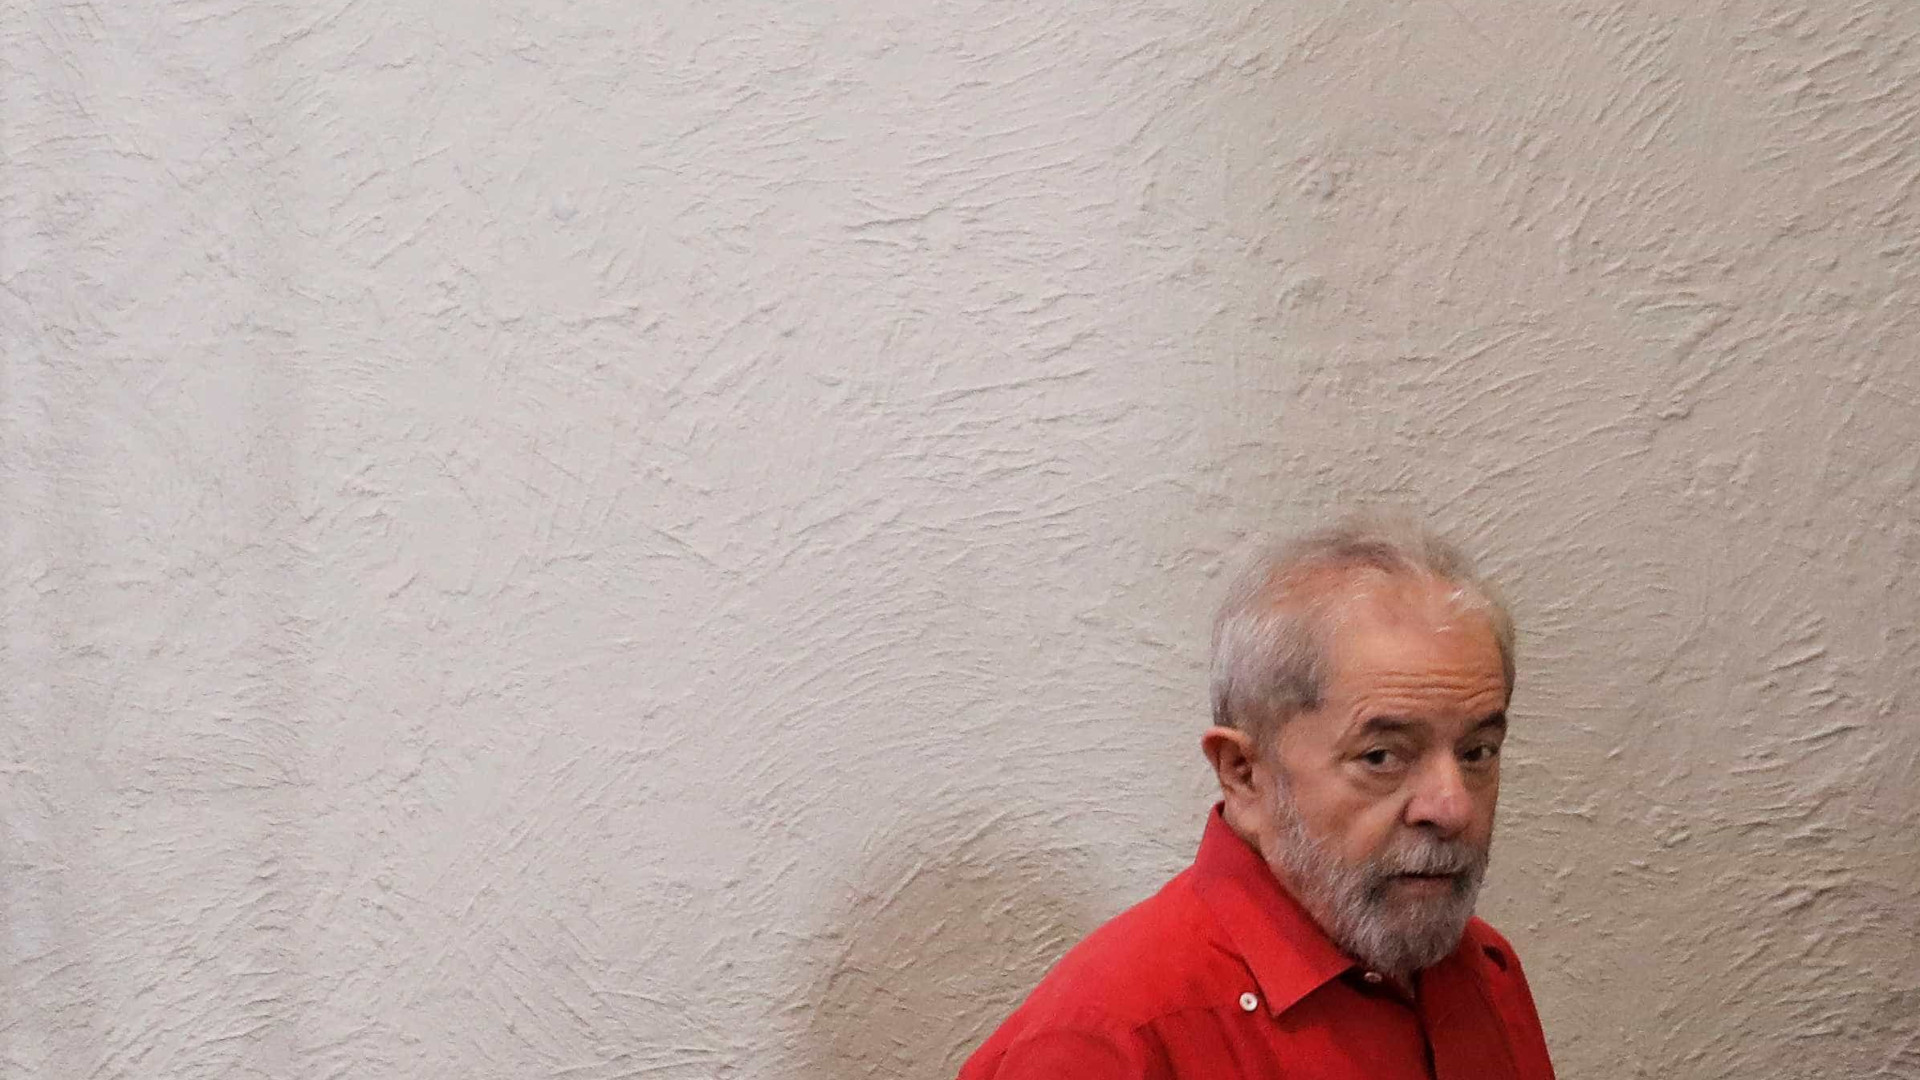 Depoimento de Lula a Moro: conheça 
as teses de acusação e de defesa